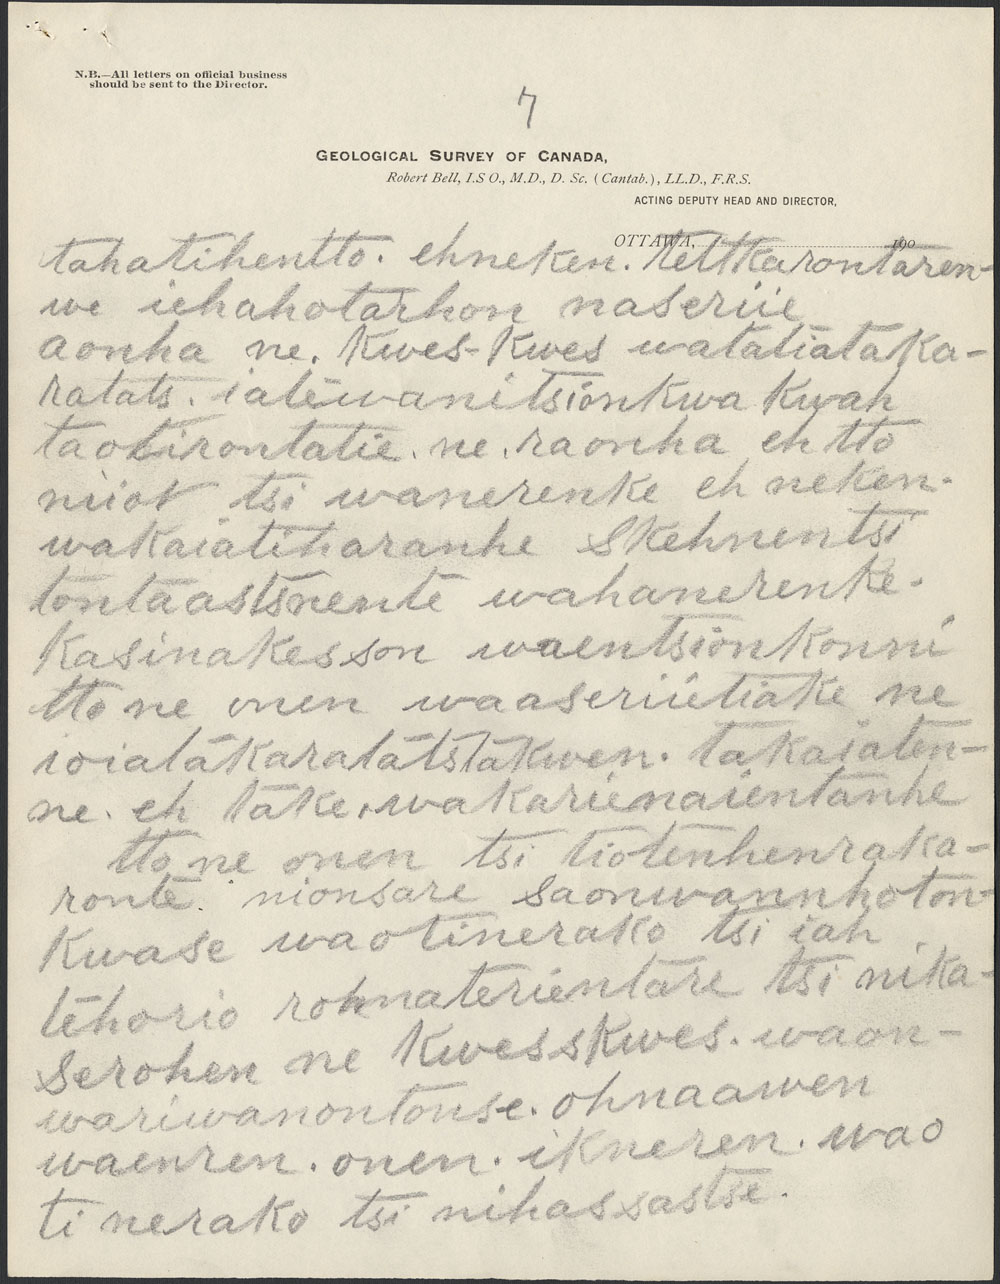 Papier beige avec texte manuscrit en noir, portant l'en-tte officiel de la Commission gologique du Canada